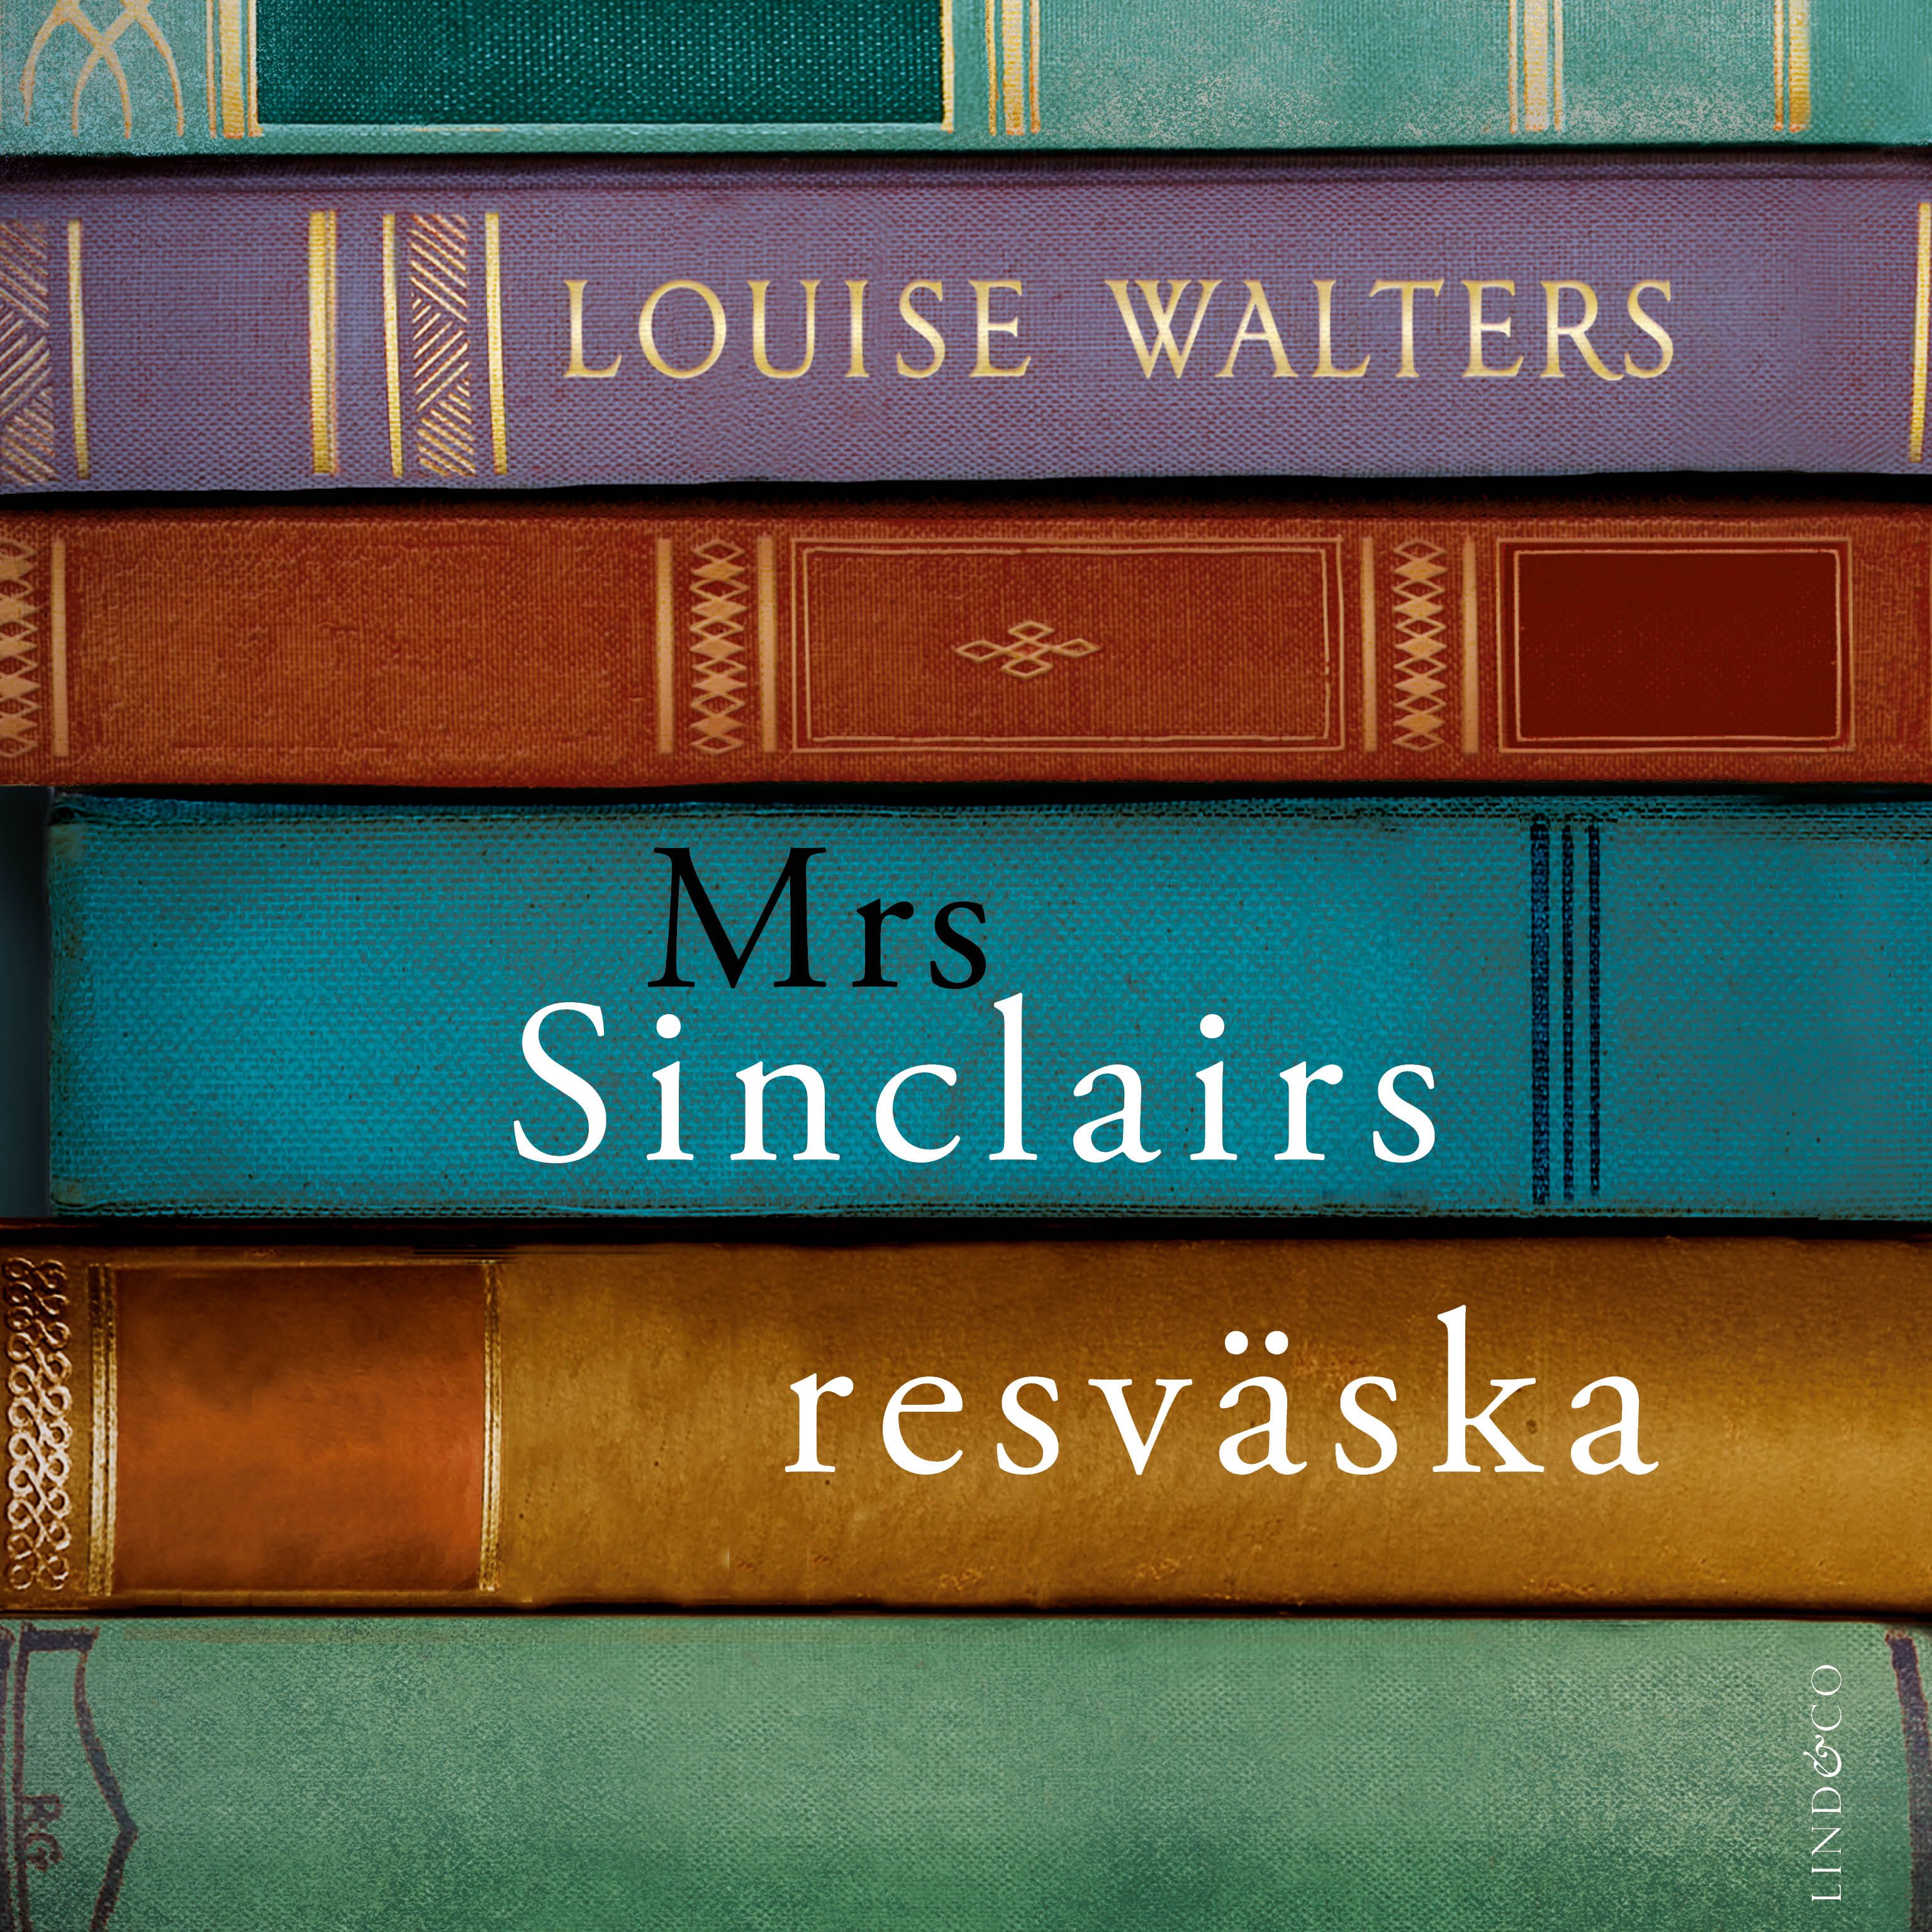 Mrs Sinclairs resväska, ljudbok av Louise Walters